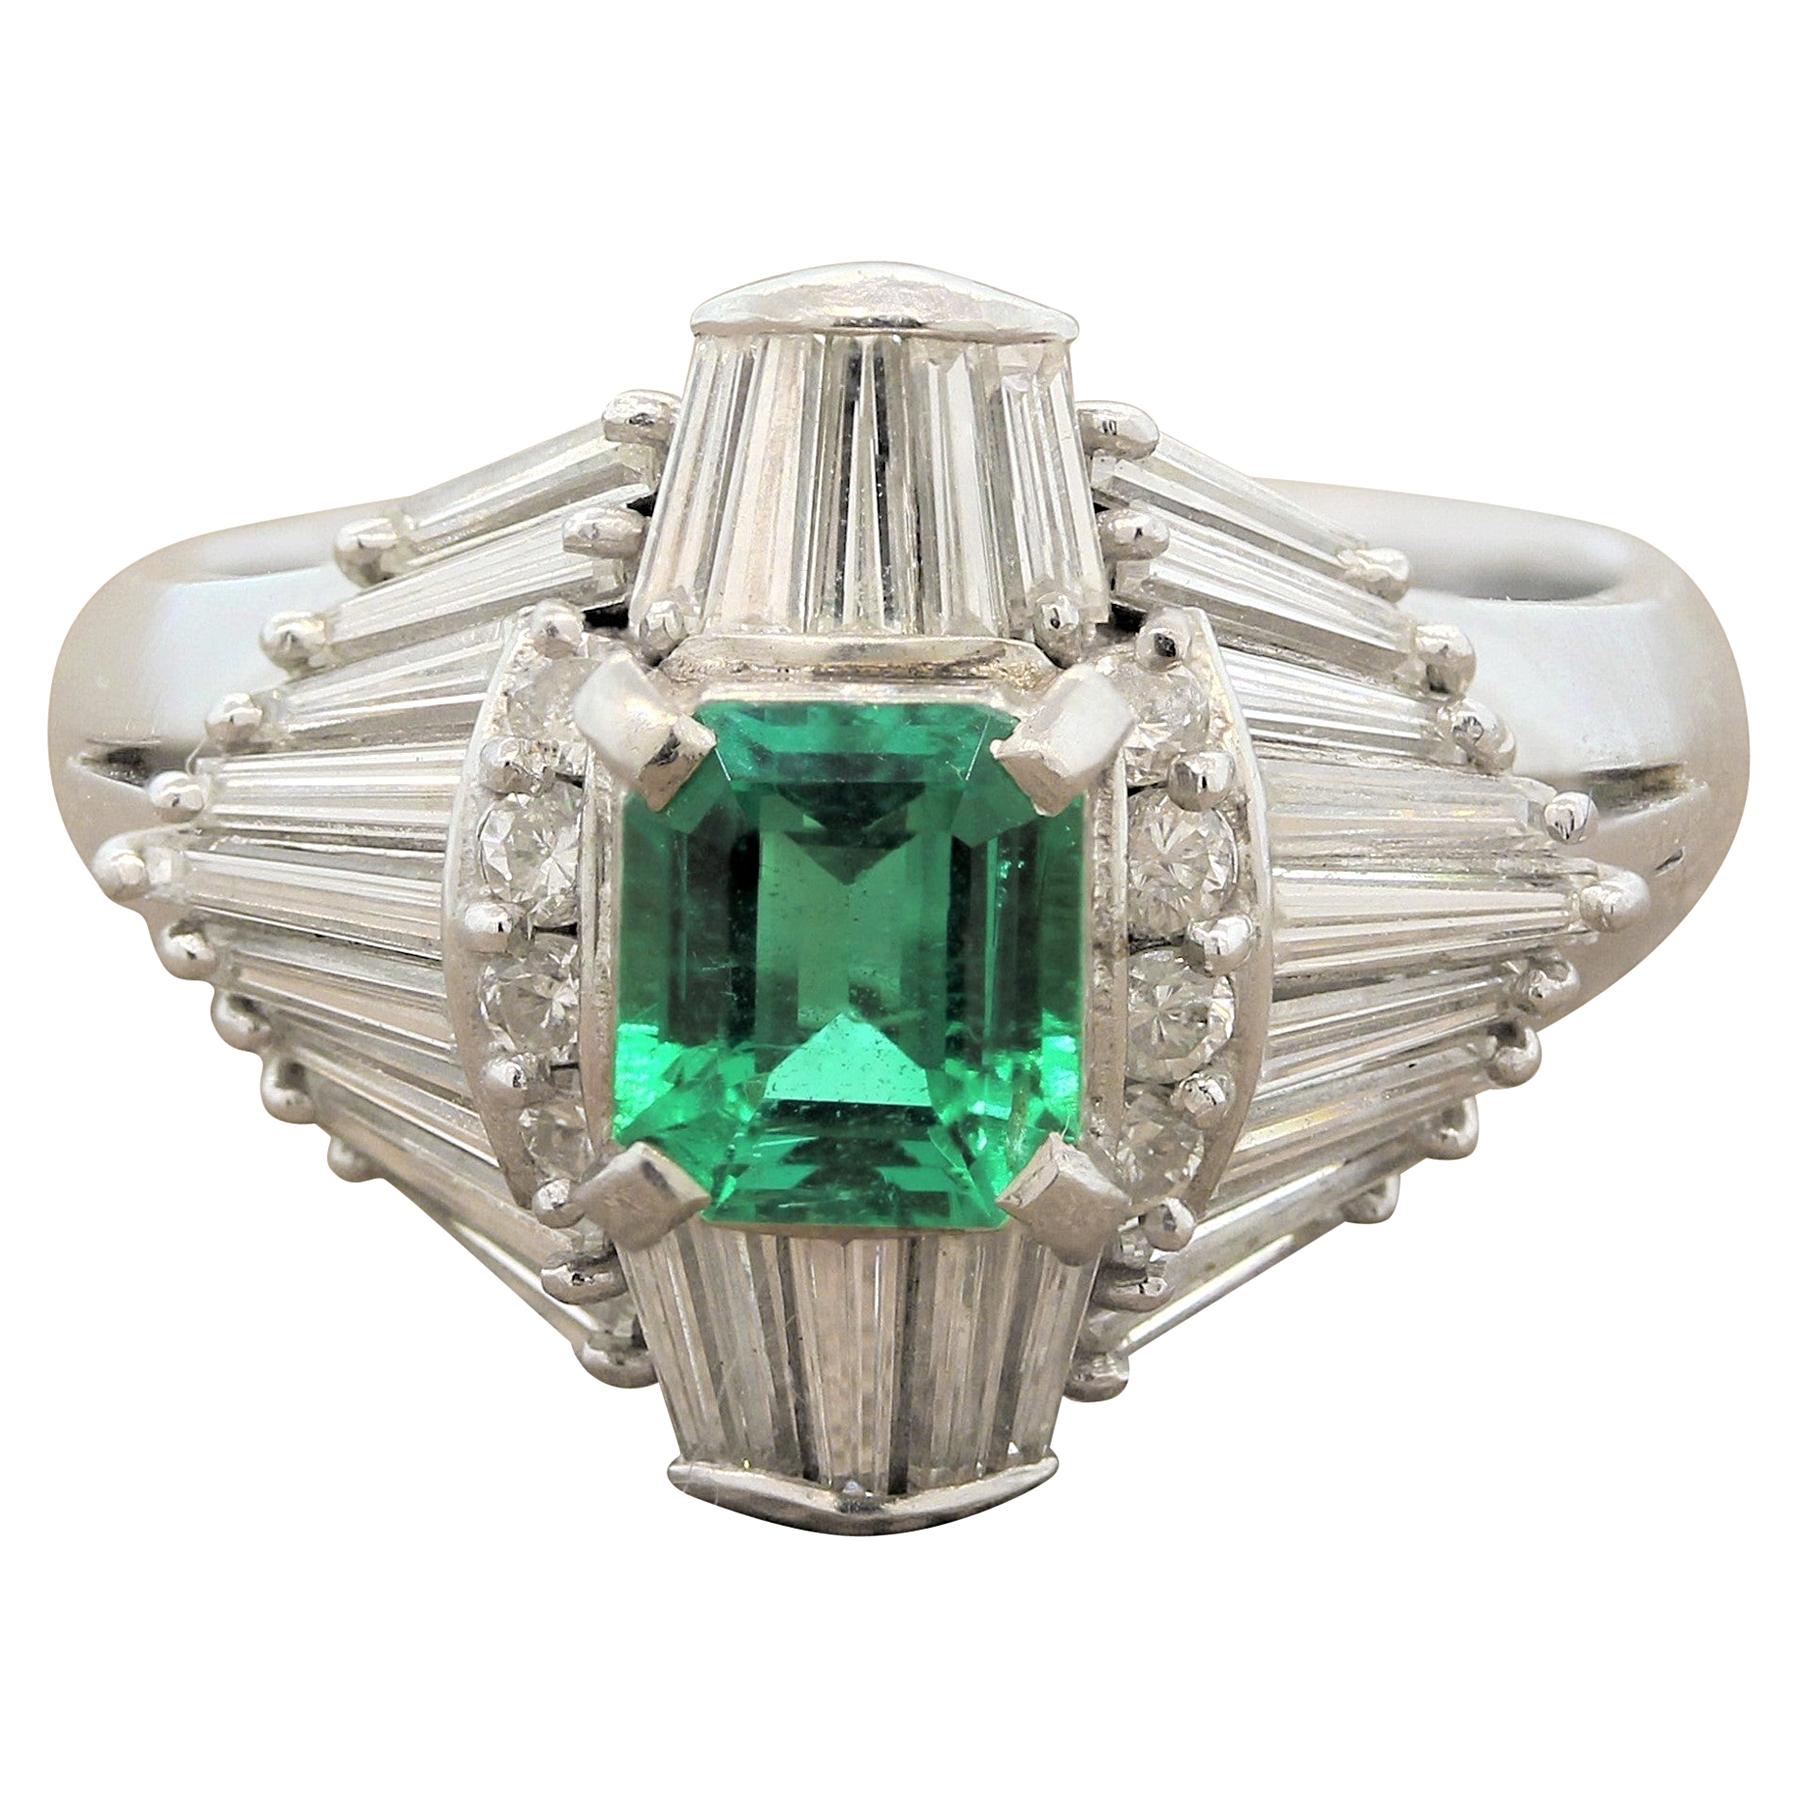 Gem Emerald Diamond Platinum Ring